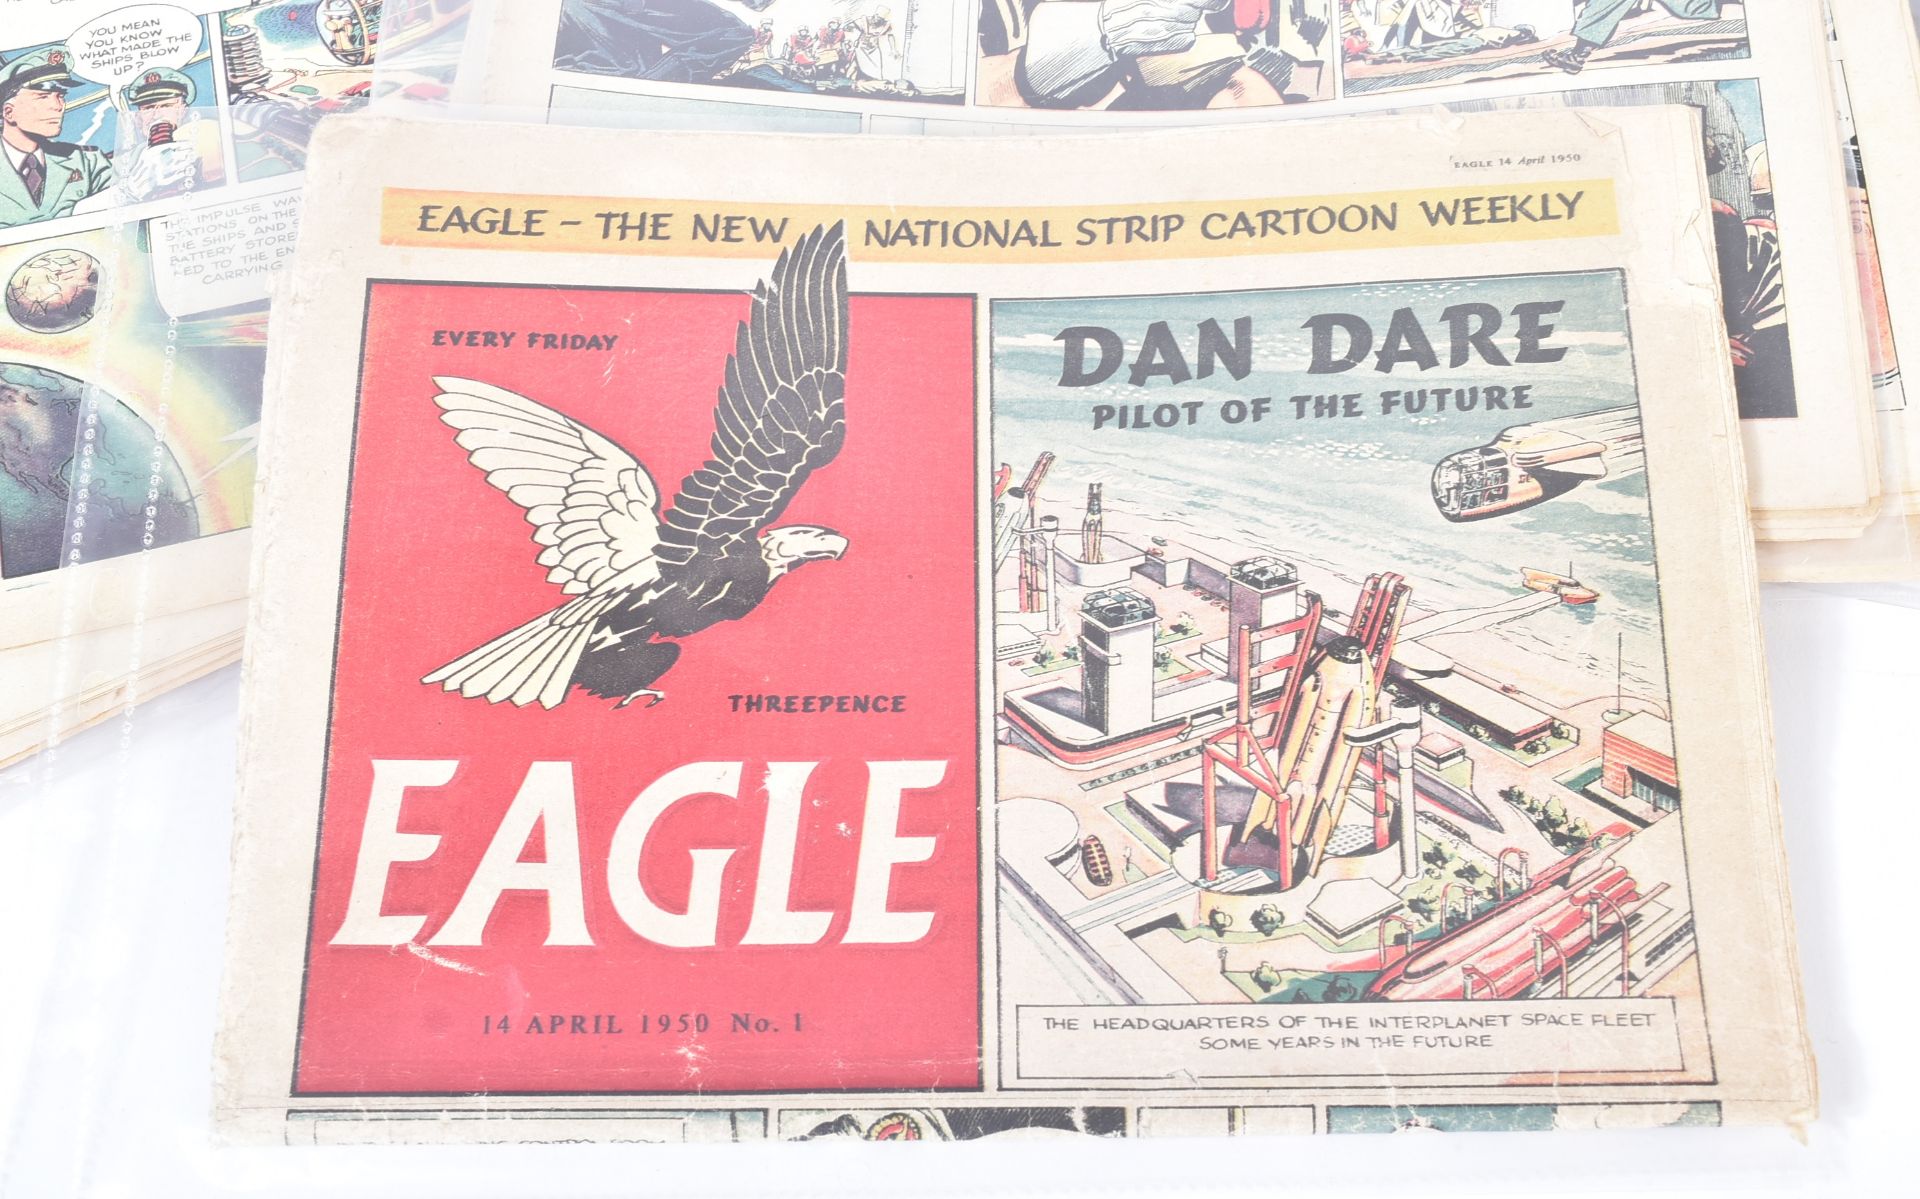 COMIC BOOKS - EAGLE COMICS - DAN DARE VOLUME 1 ISSUE 1-25 - Image 5 of 5